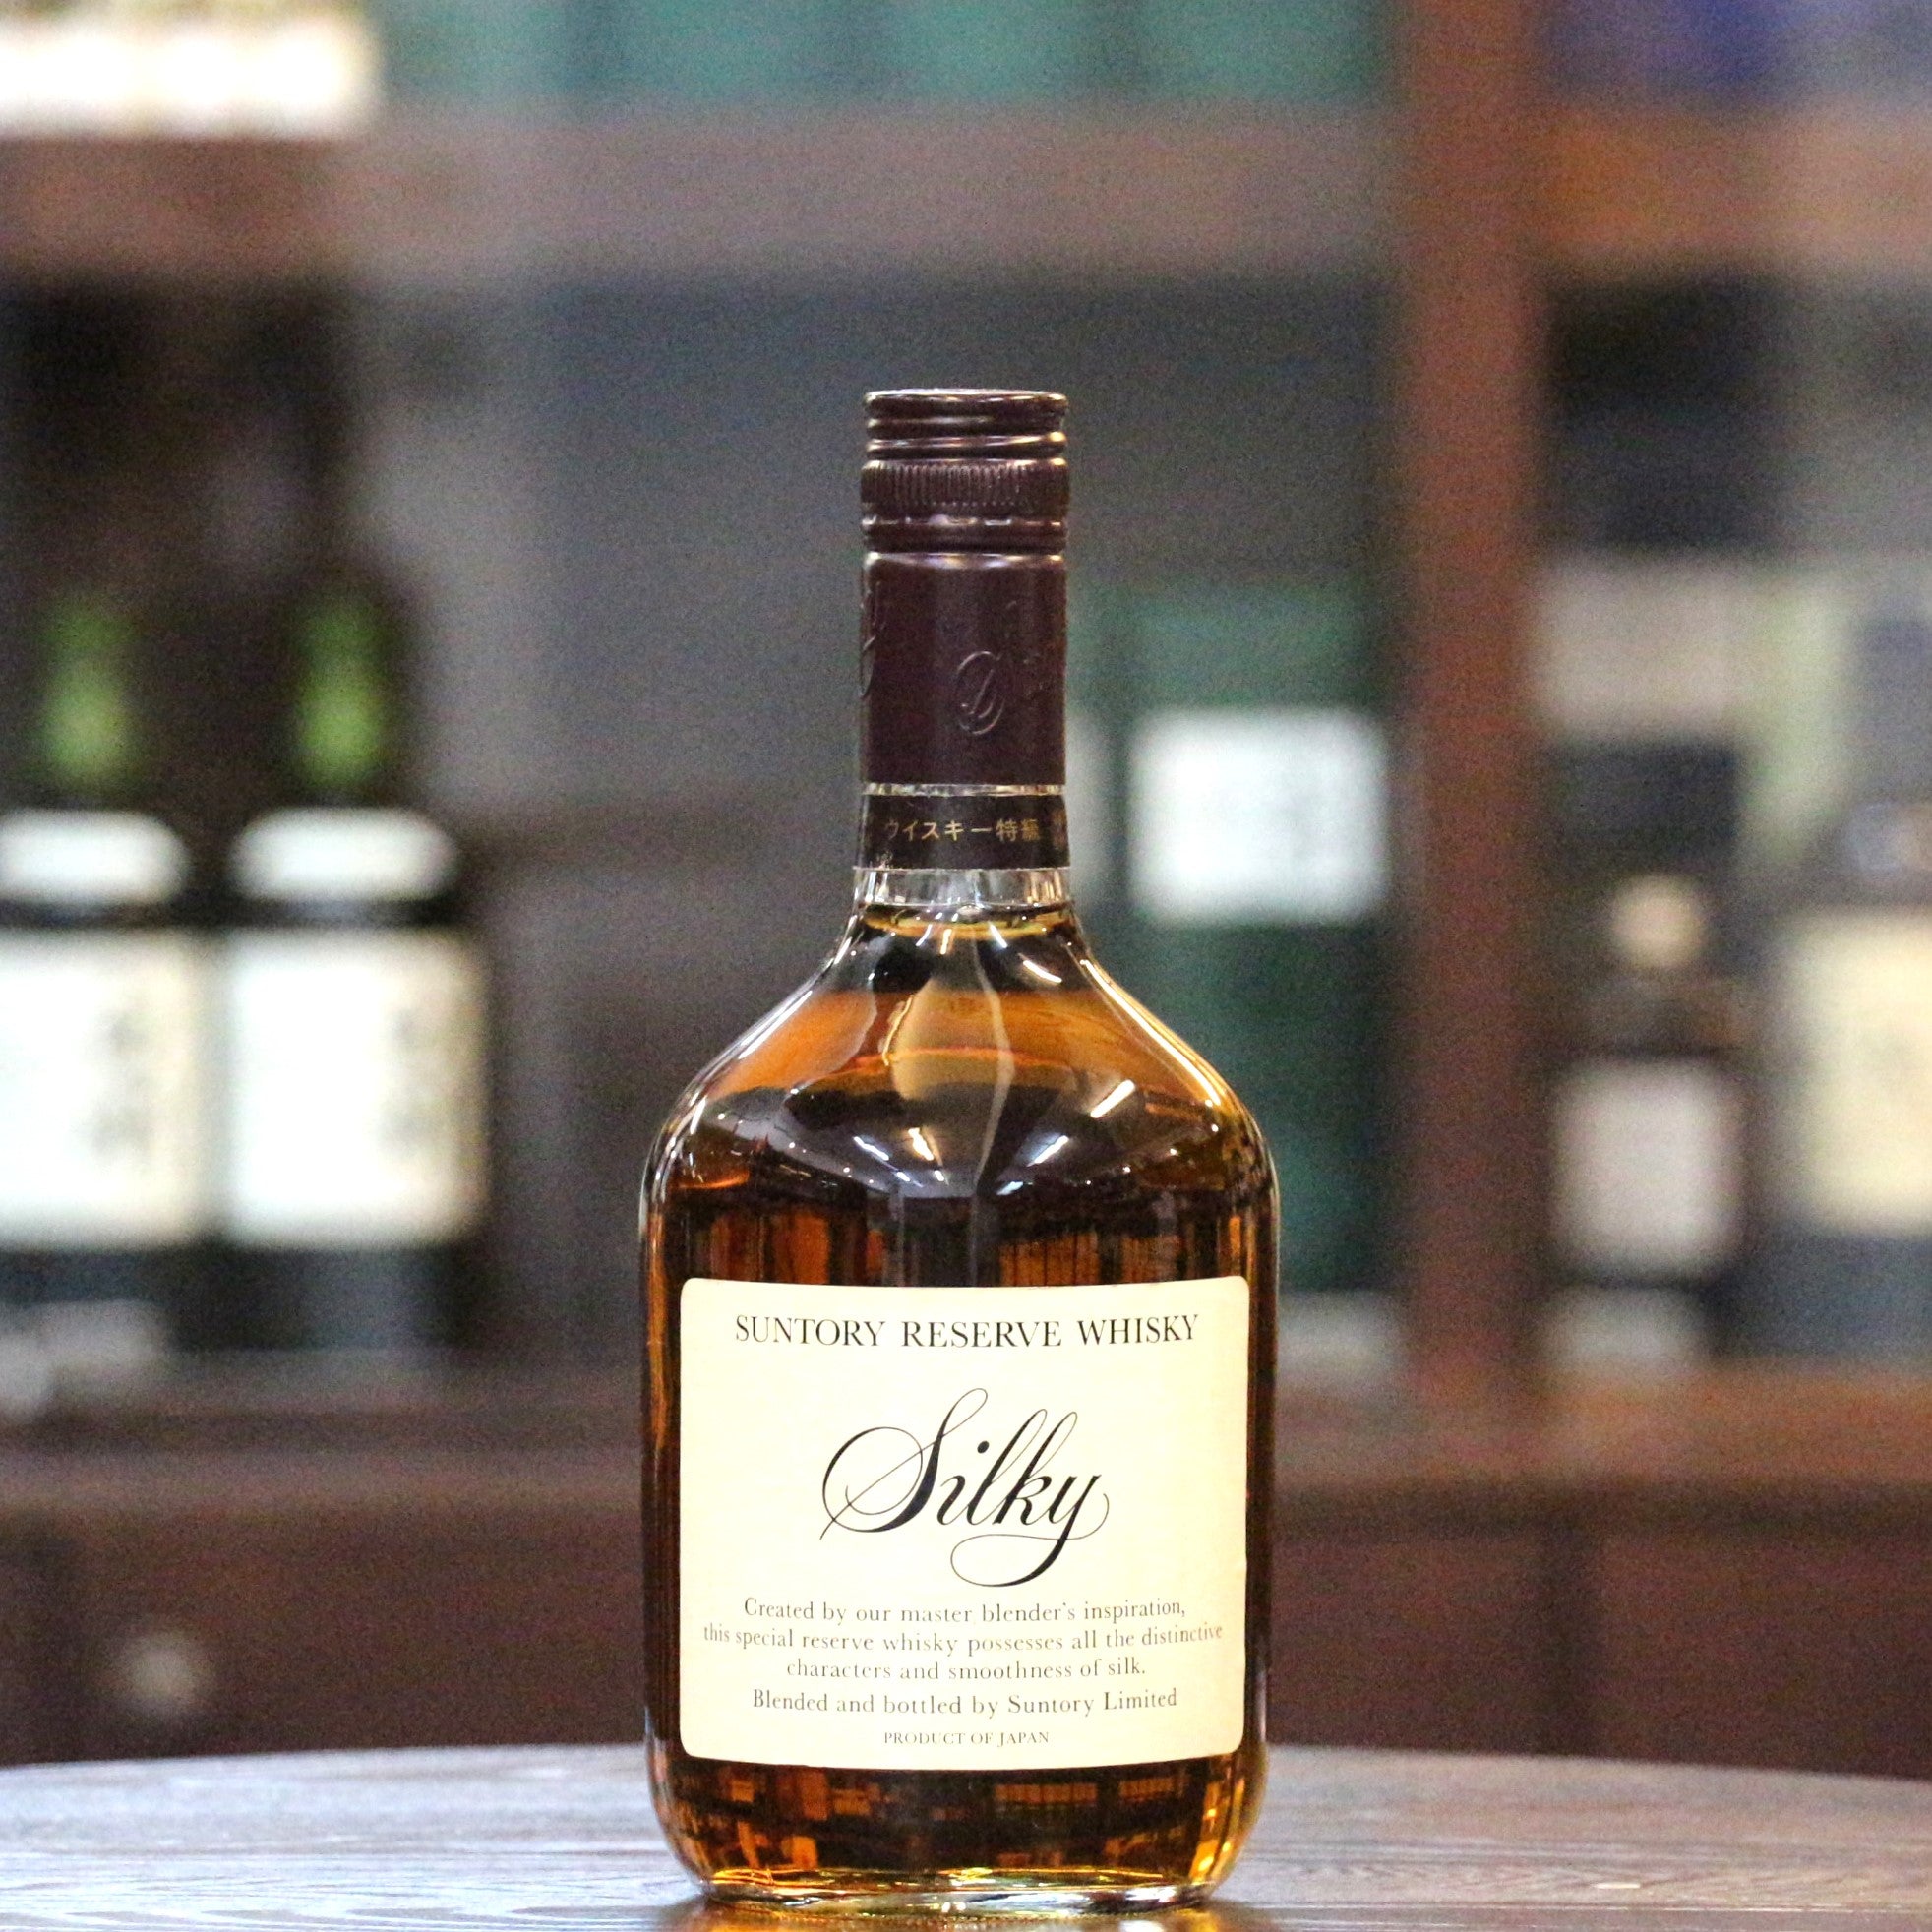 Suntory Reserve "Silky" Japanese Blended Whisky